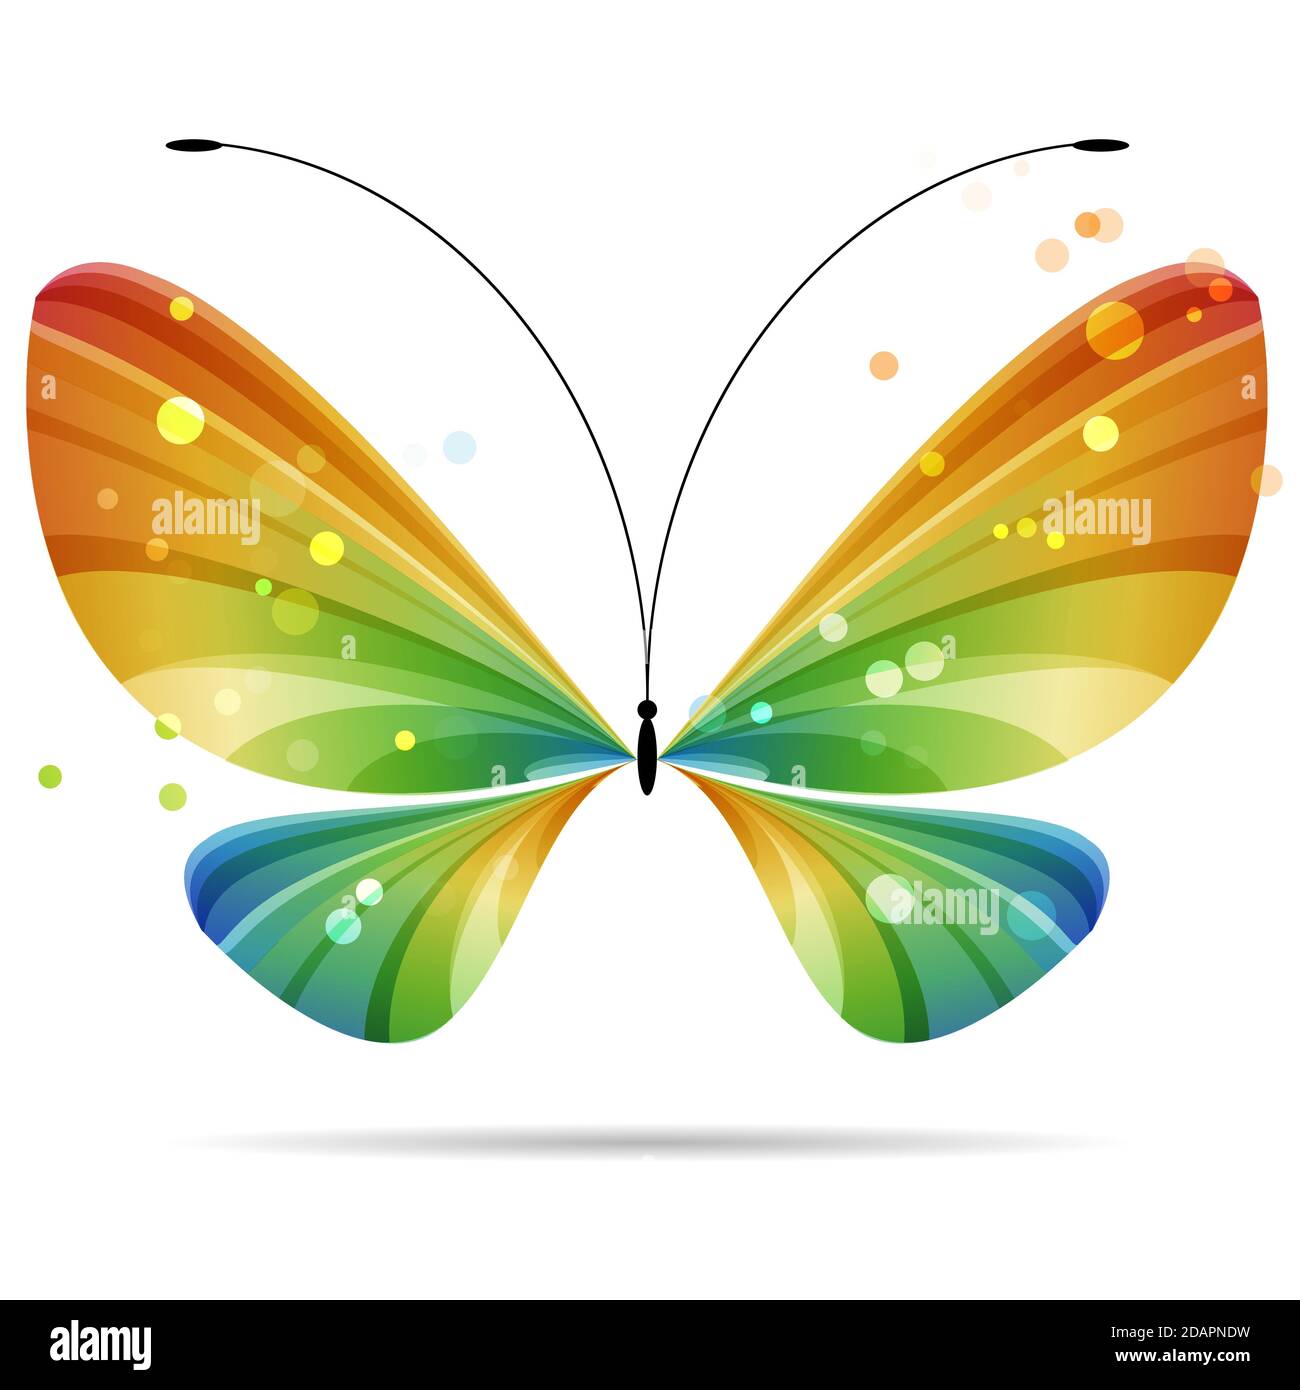 magnifique papillon coloré à rayures multicolores sur fond blanc, antennes noires, quatre ailes, deux paires d'ailes Illustration de Vecteur